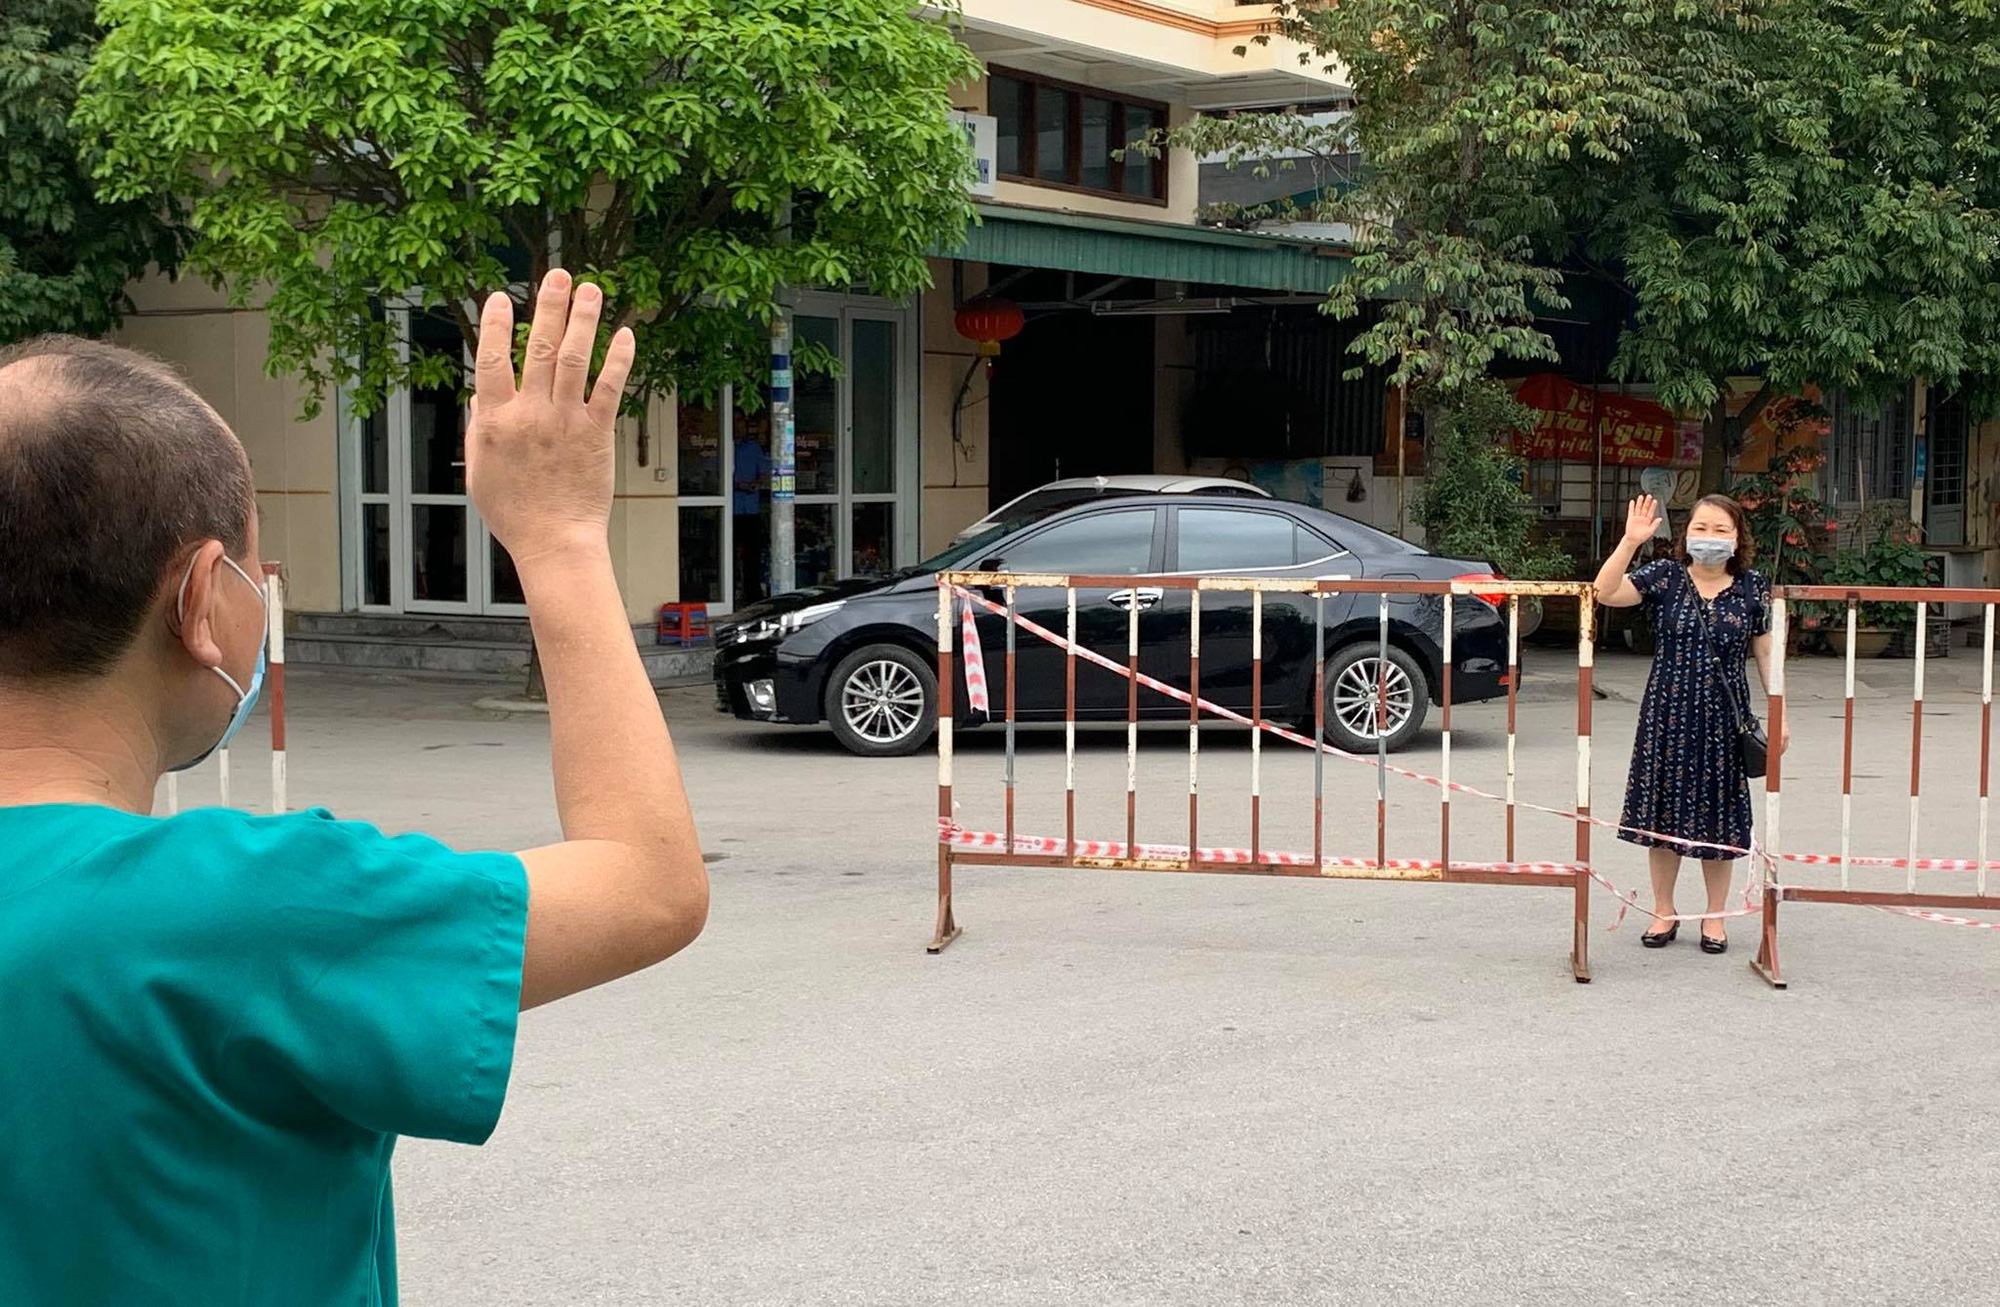 Xúc động khoảnh khắc bác sĩ Bệnh viện dã chiến số 2 Quảng Ninh gặp vợ và nói chuyện từ xa qua hàng rào chắn - Ảnh 1.